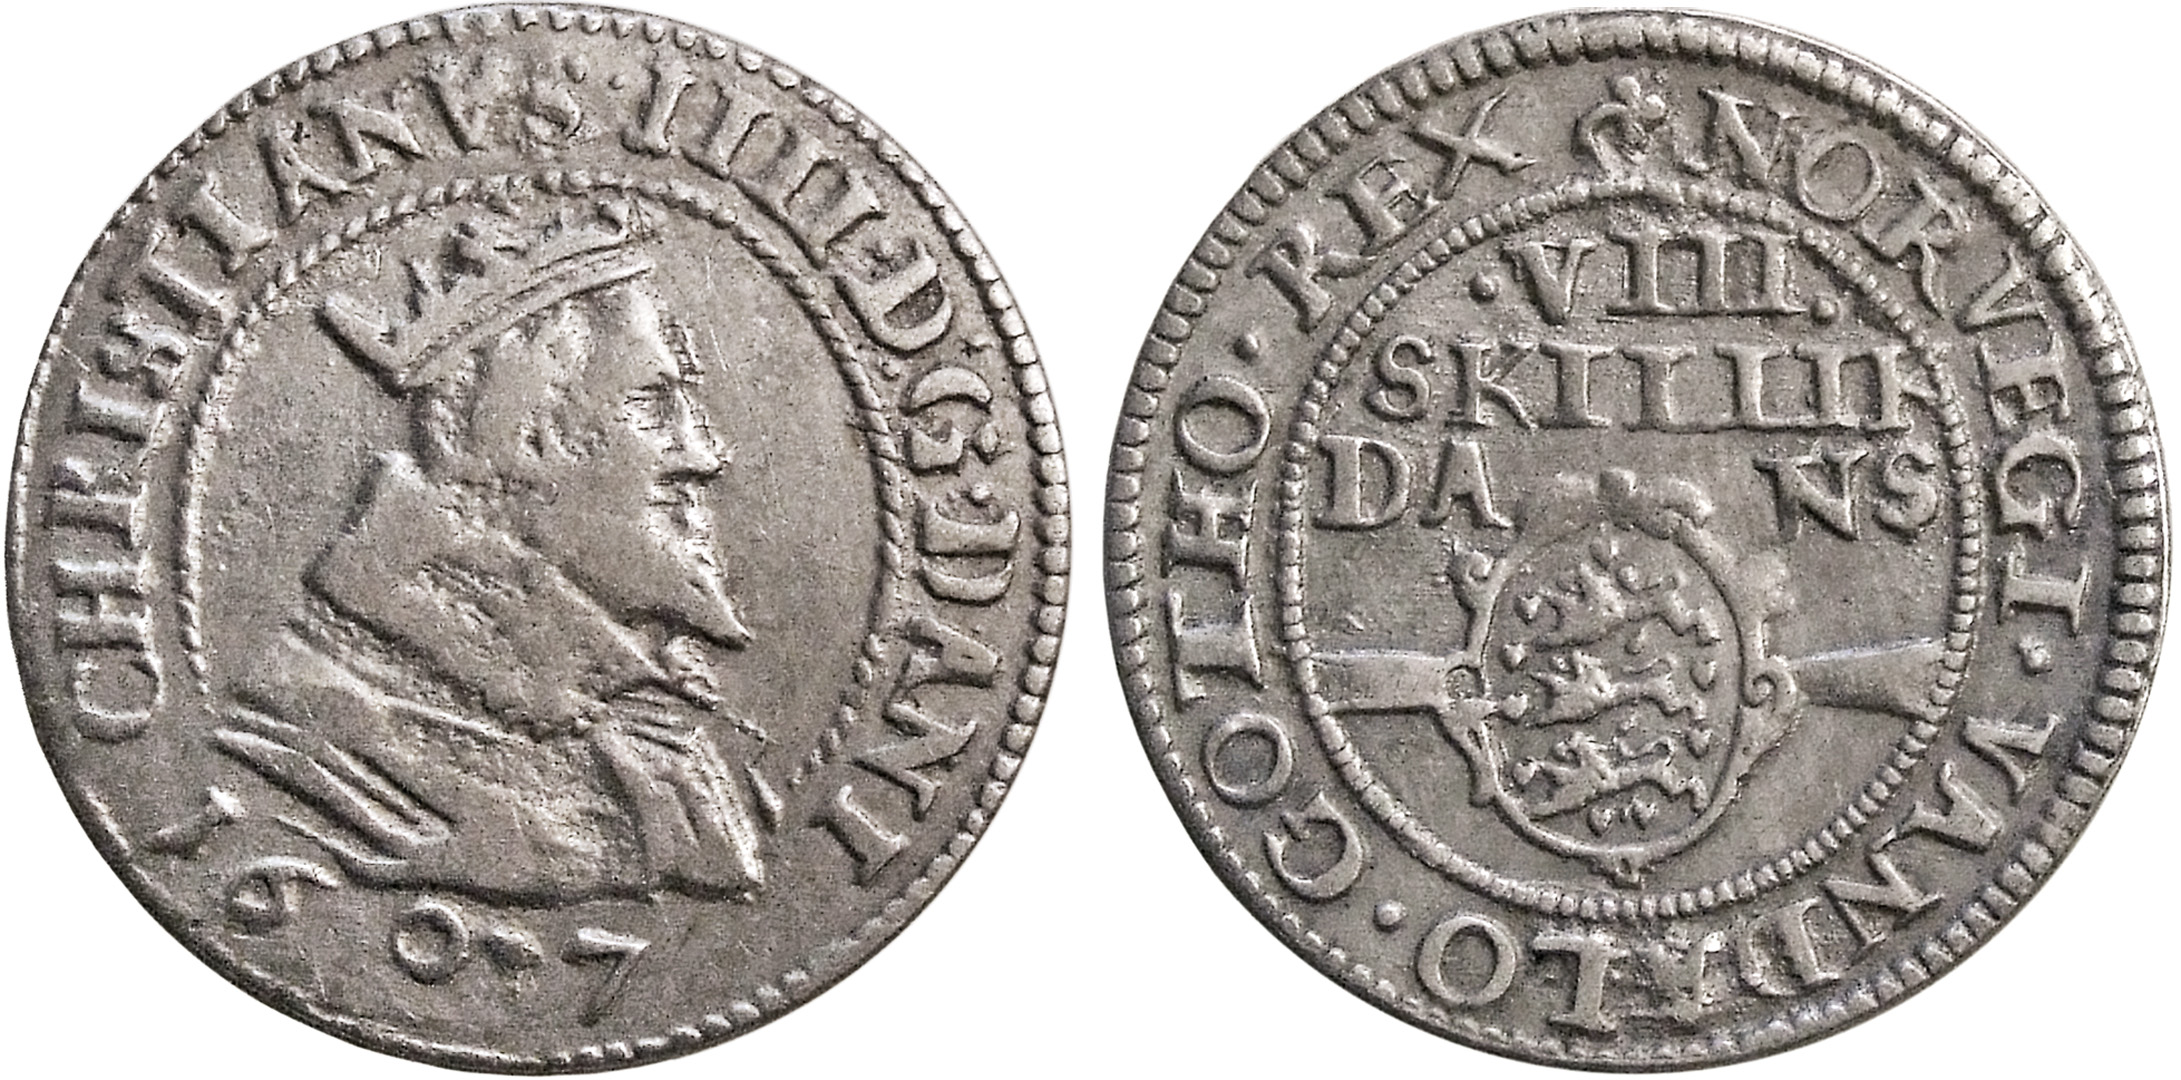 Danija. Kristijonas IV. 8 skilingai. 1607 m. Sidabras. Ø 24 mm, L. Stuokos-Gucevičiaus g. lobio (Vilnius, 1630/2003) moneta